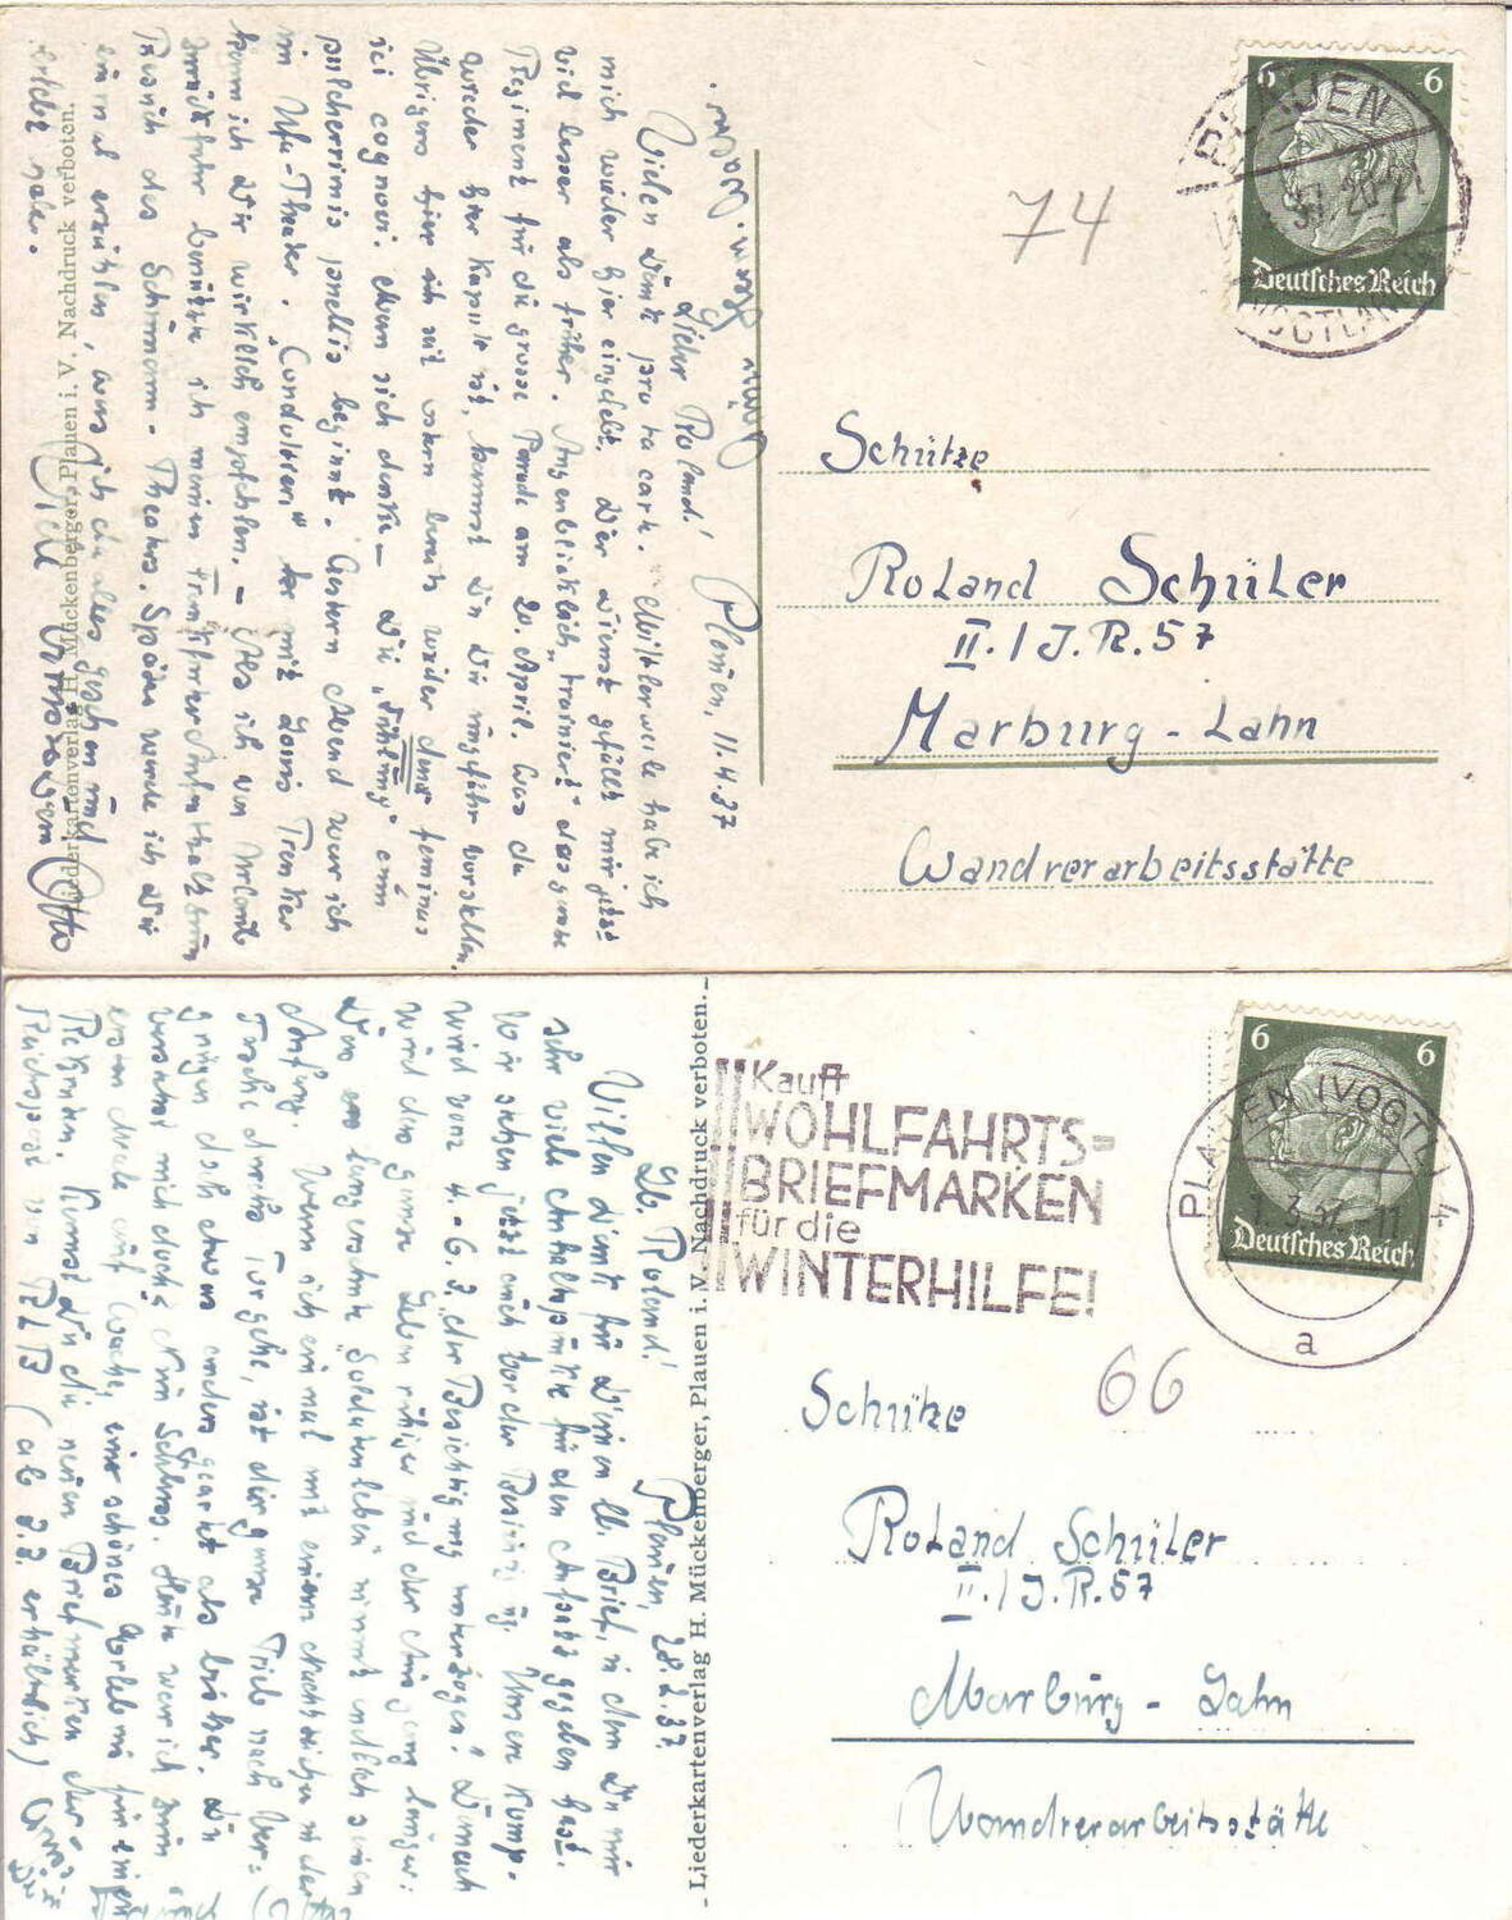 Deutschland 1937, zwei Liederkarten: "Der Zipfelsgörg" und ""Treue Liebe". Gelaufen.Germany 1937, - Image 2 of 2